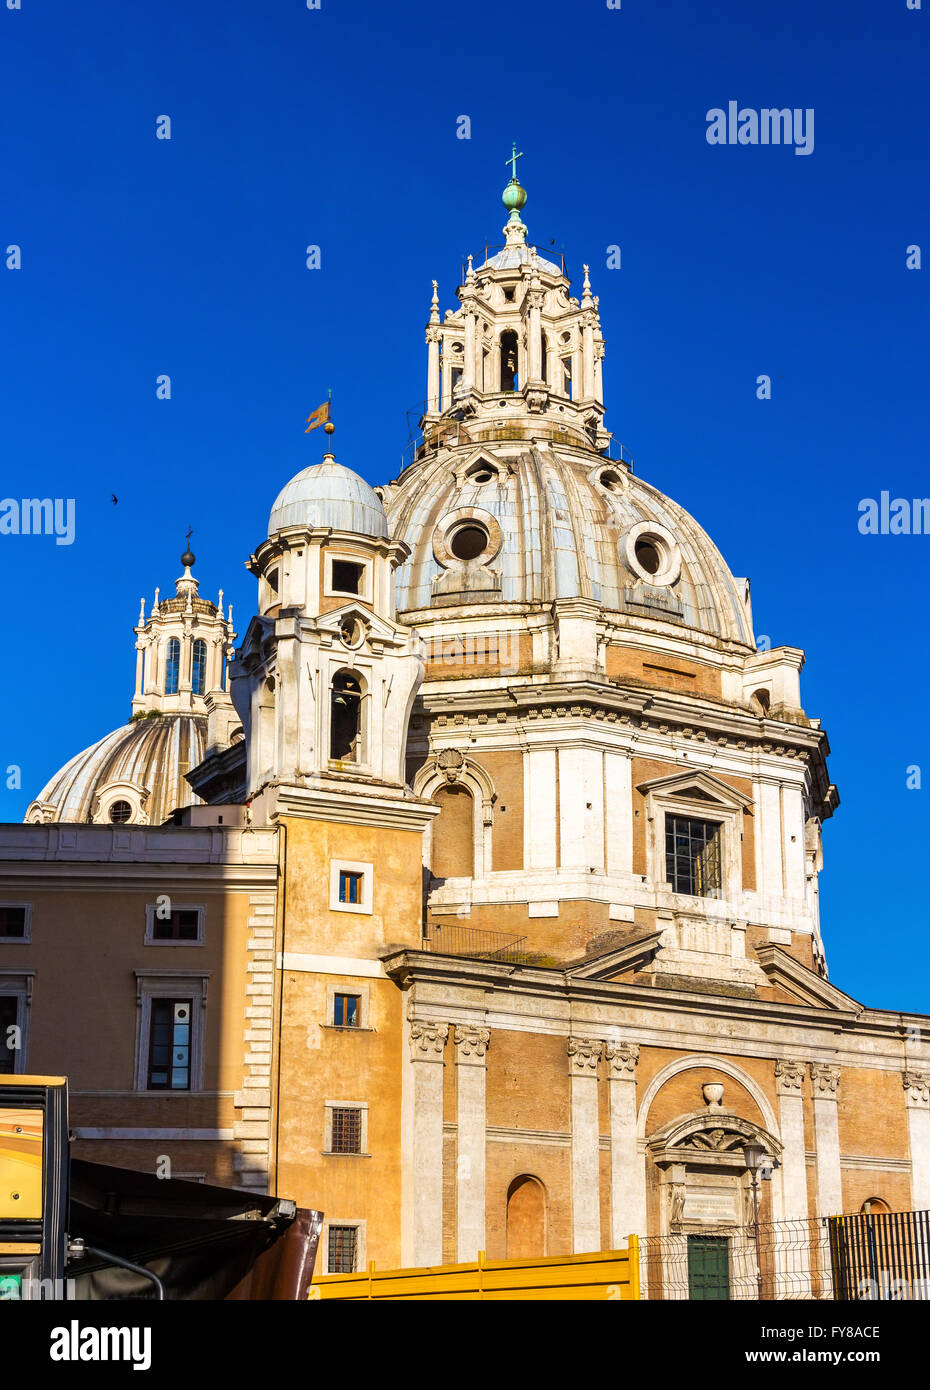 Santa Maria di Loreto Church in Rome Stock Photo